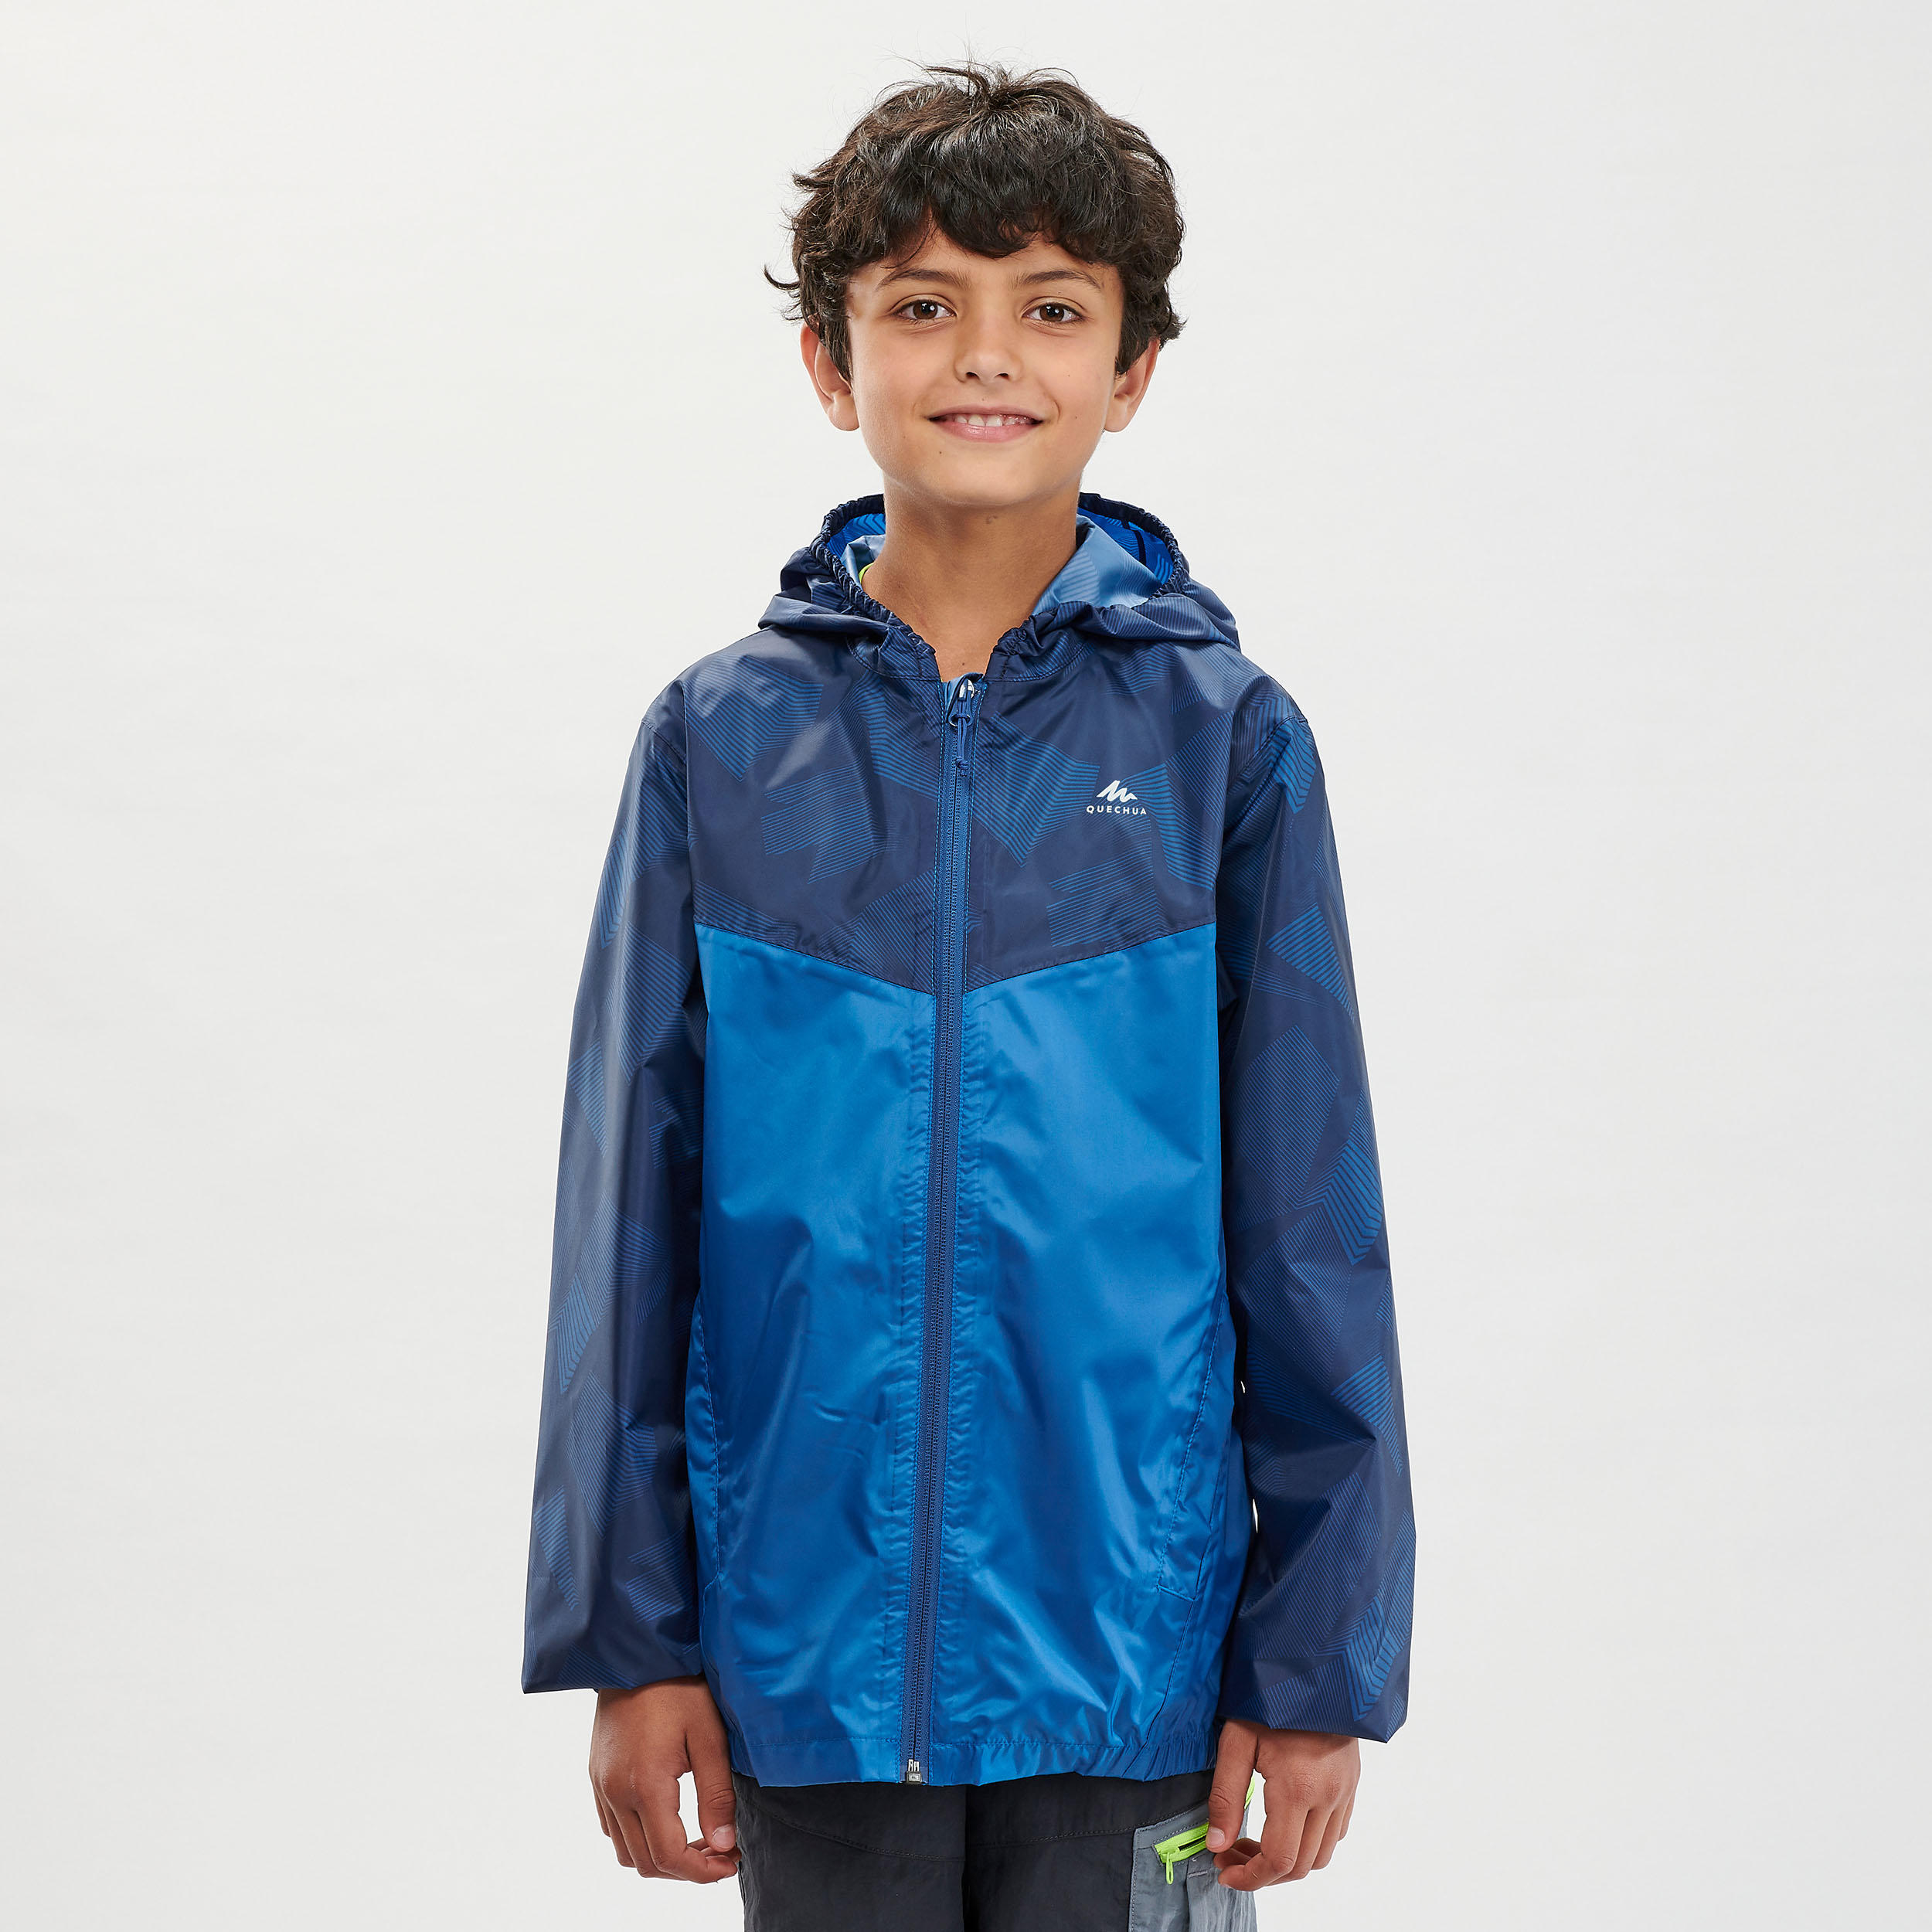 Kids’ Hiking Waterproof Jacket MH150 7-15 Years - blue 1/8